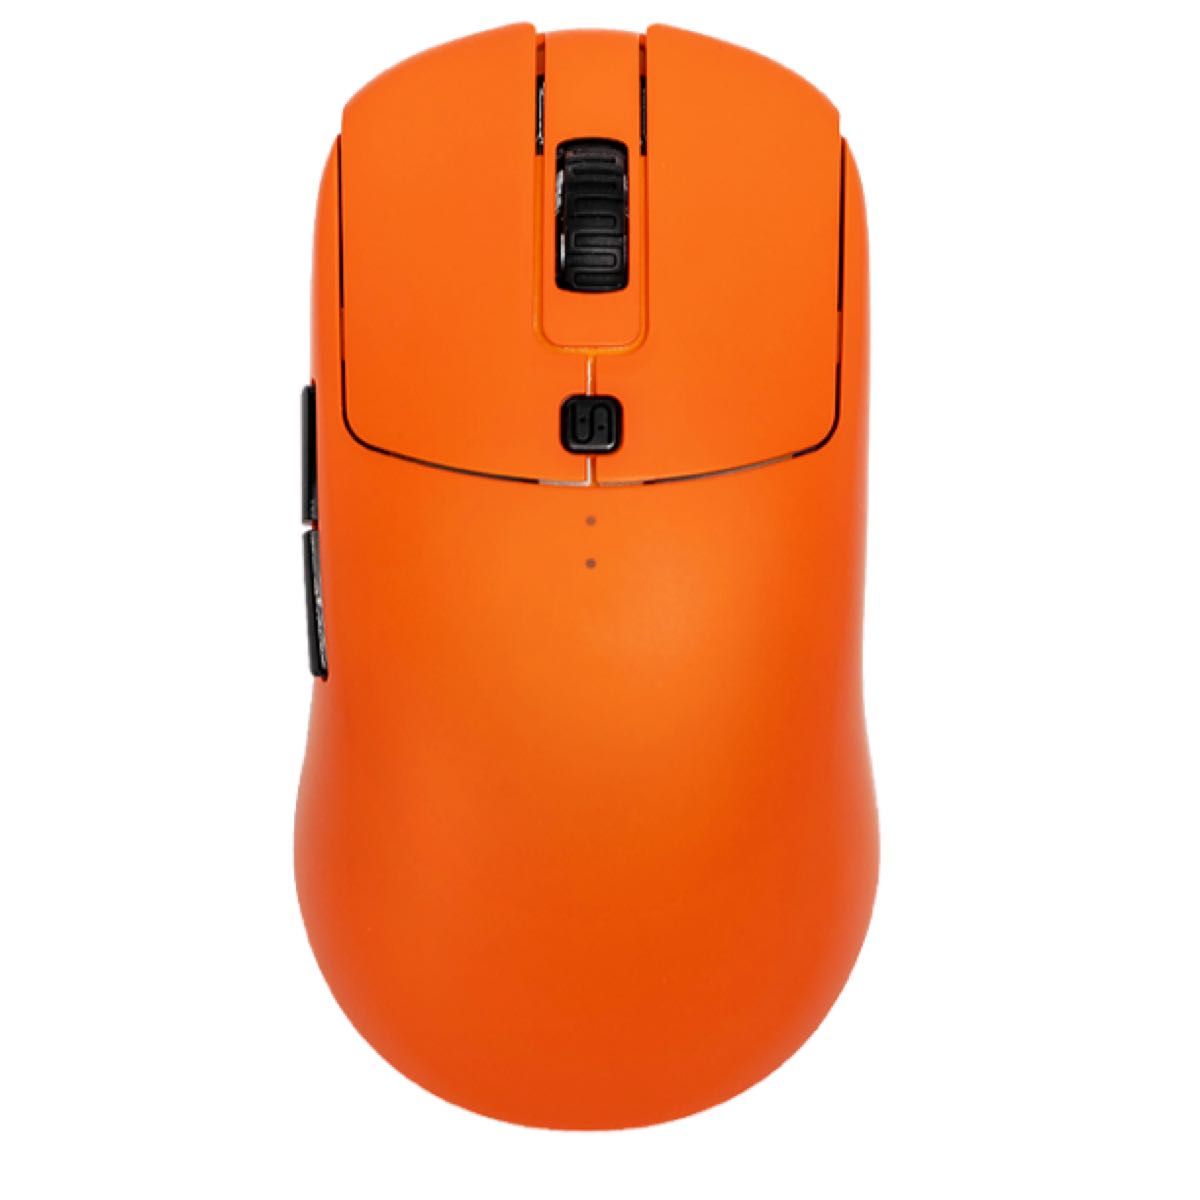 格安販売の 【新品未開封品】VAXEE XE Bluetoothマウス 無線マウス